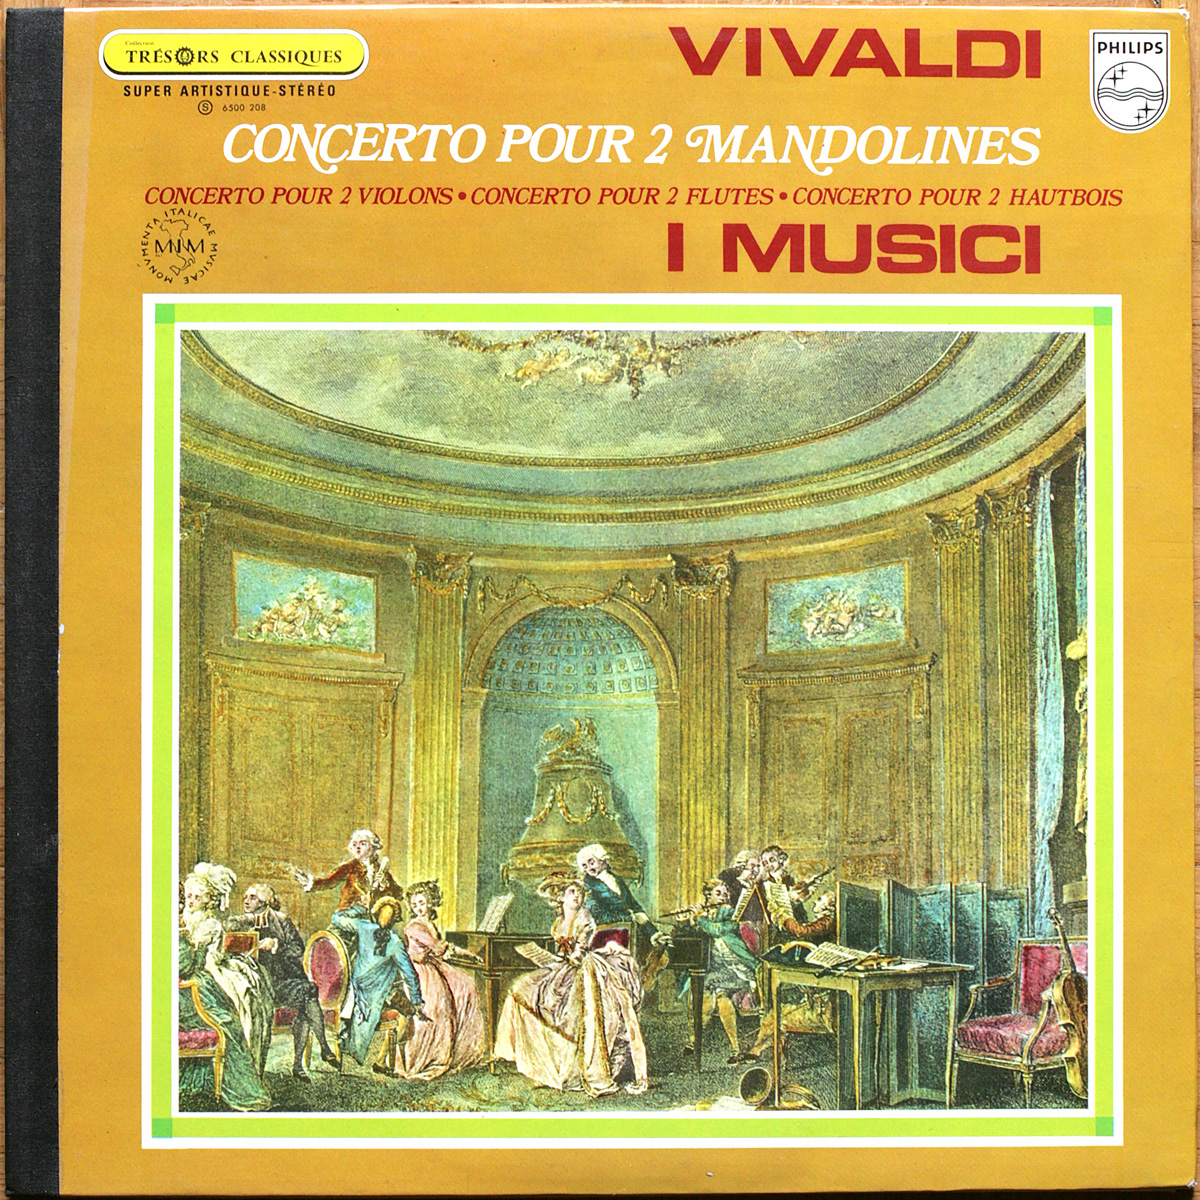 Vivaldi • Concerti • Pour 2 mandolines • Pour 2 violons • Pour 2 flûtes • Pour 2 hautbois • Philips 6500 208 • Félix Ayo • Roberto Michelucci • I Musici • Vittorio Negri